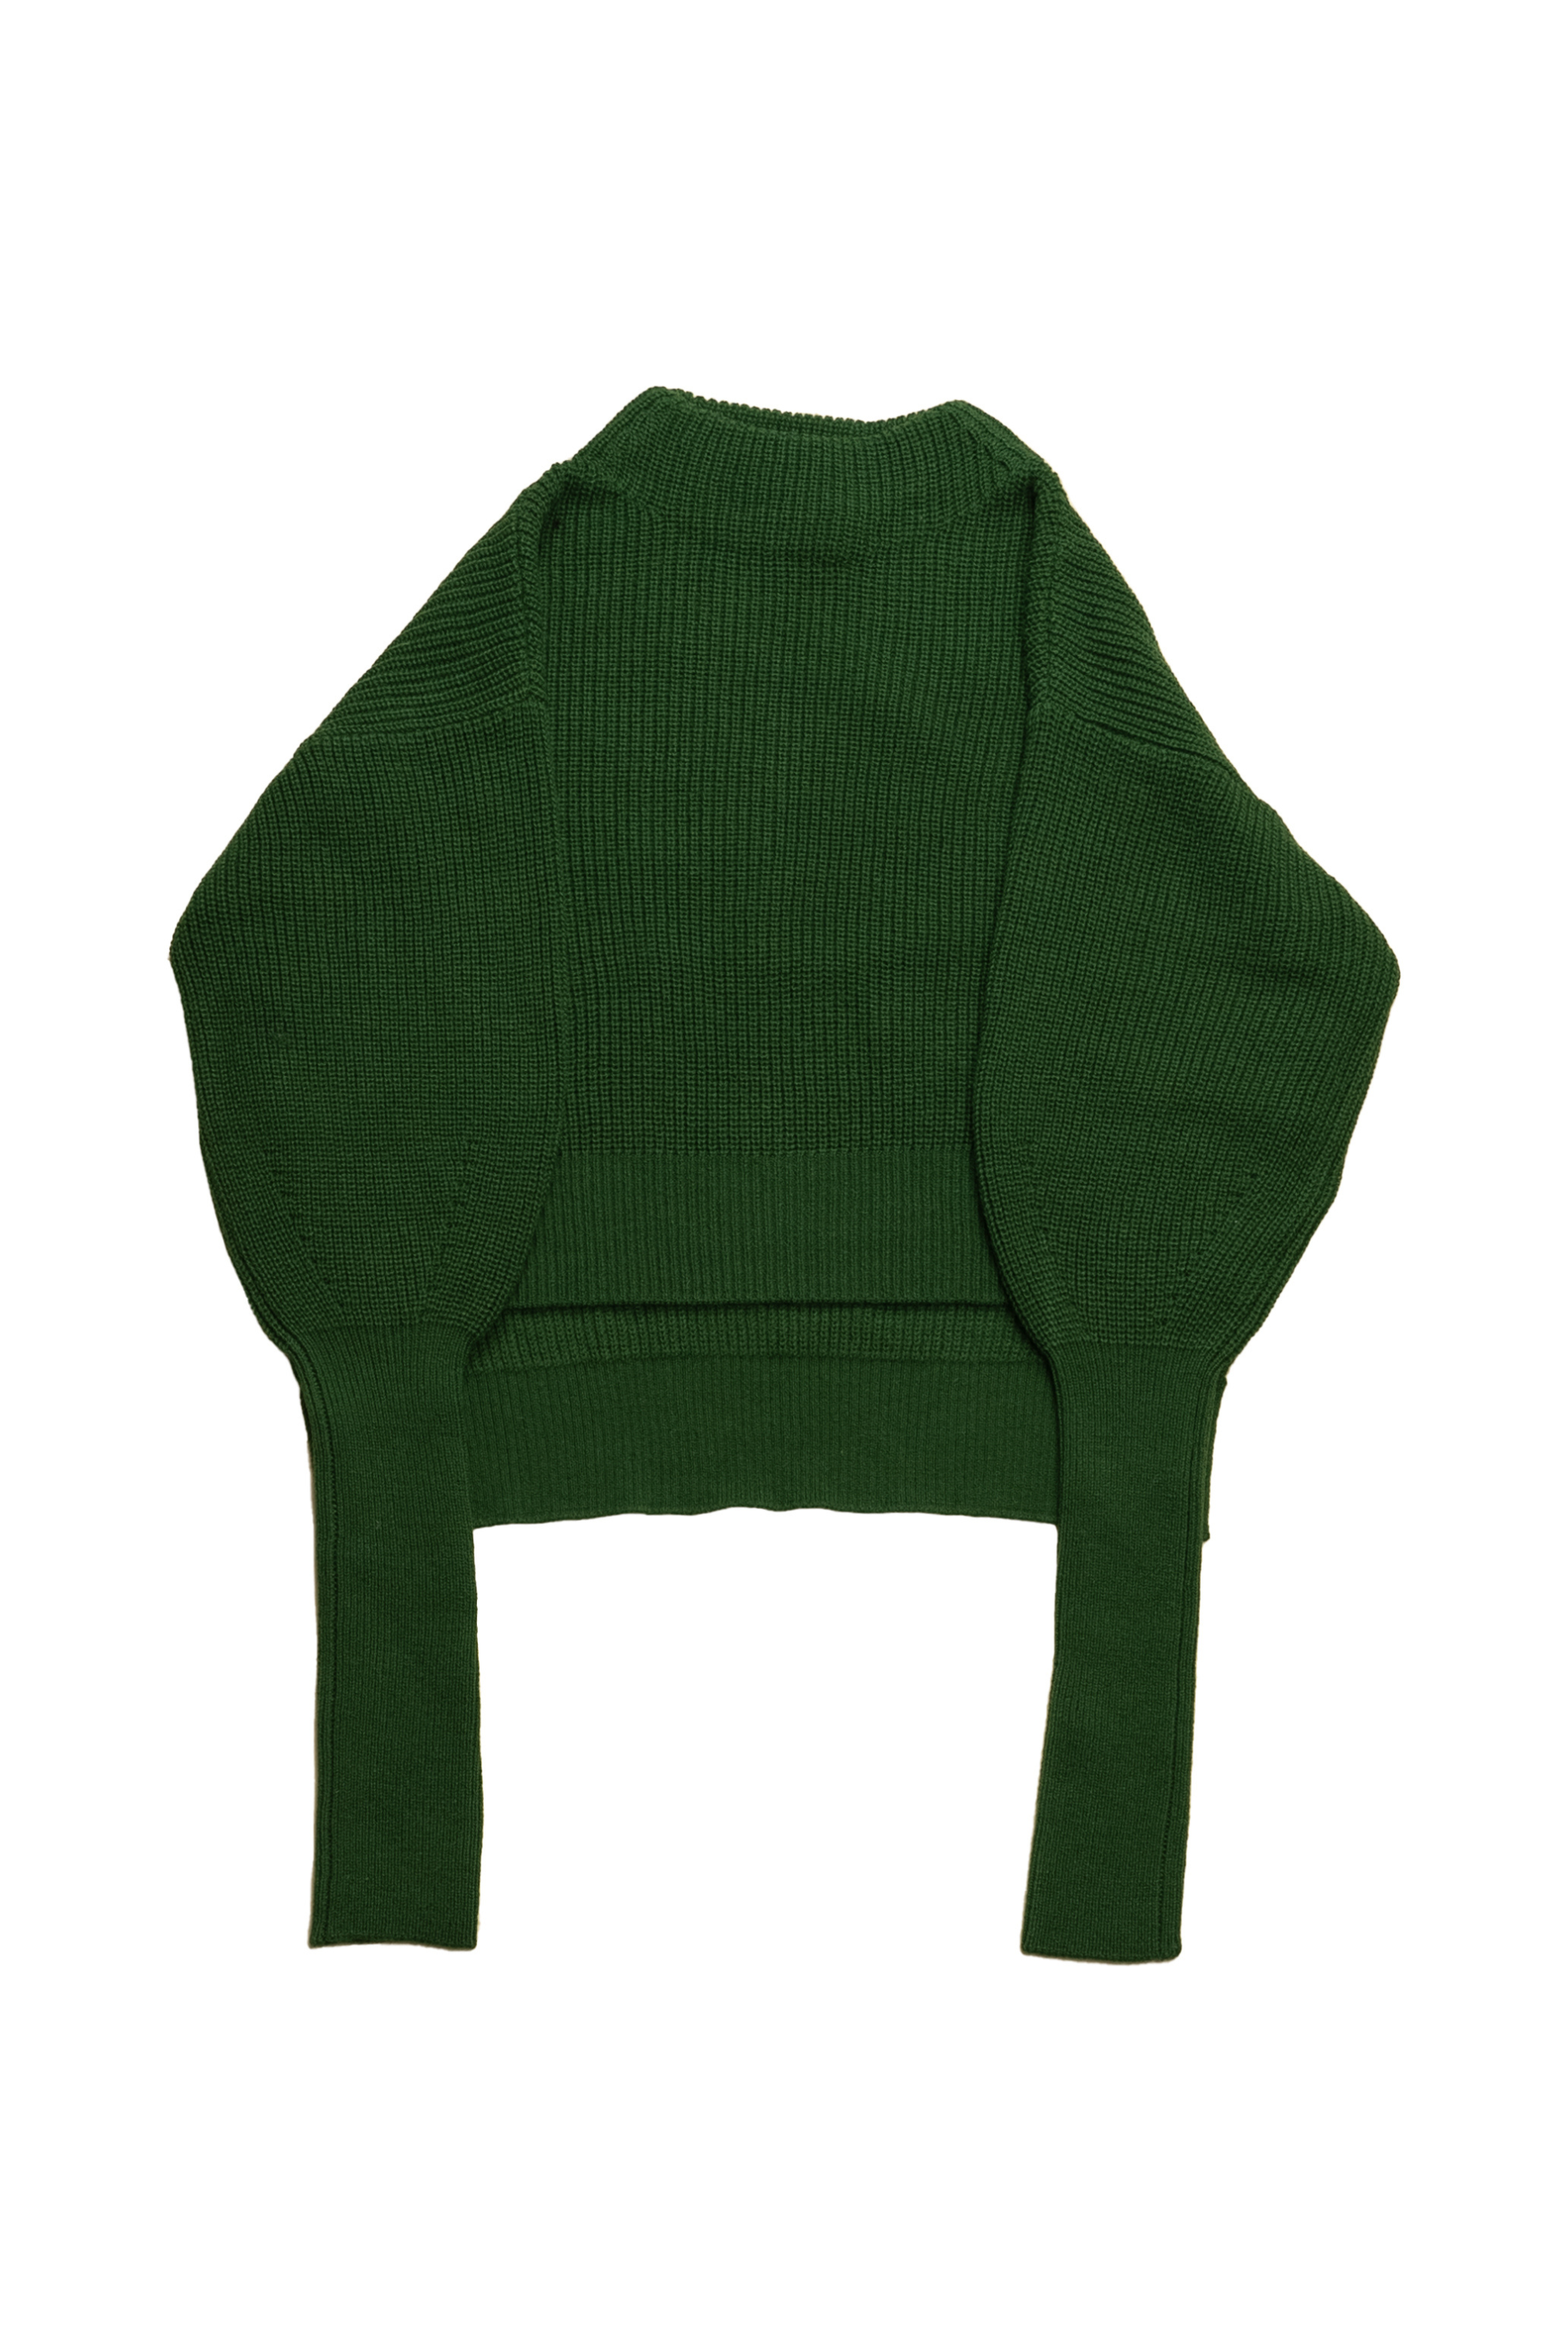 レディース【新品】Lil Ambition Build Neck Knit green